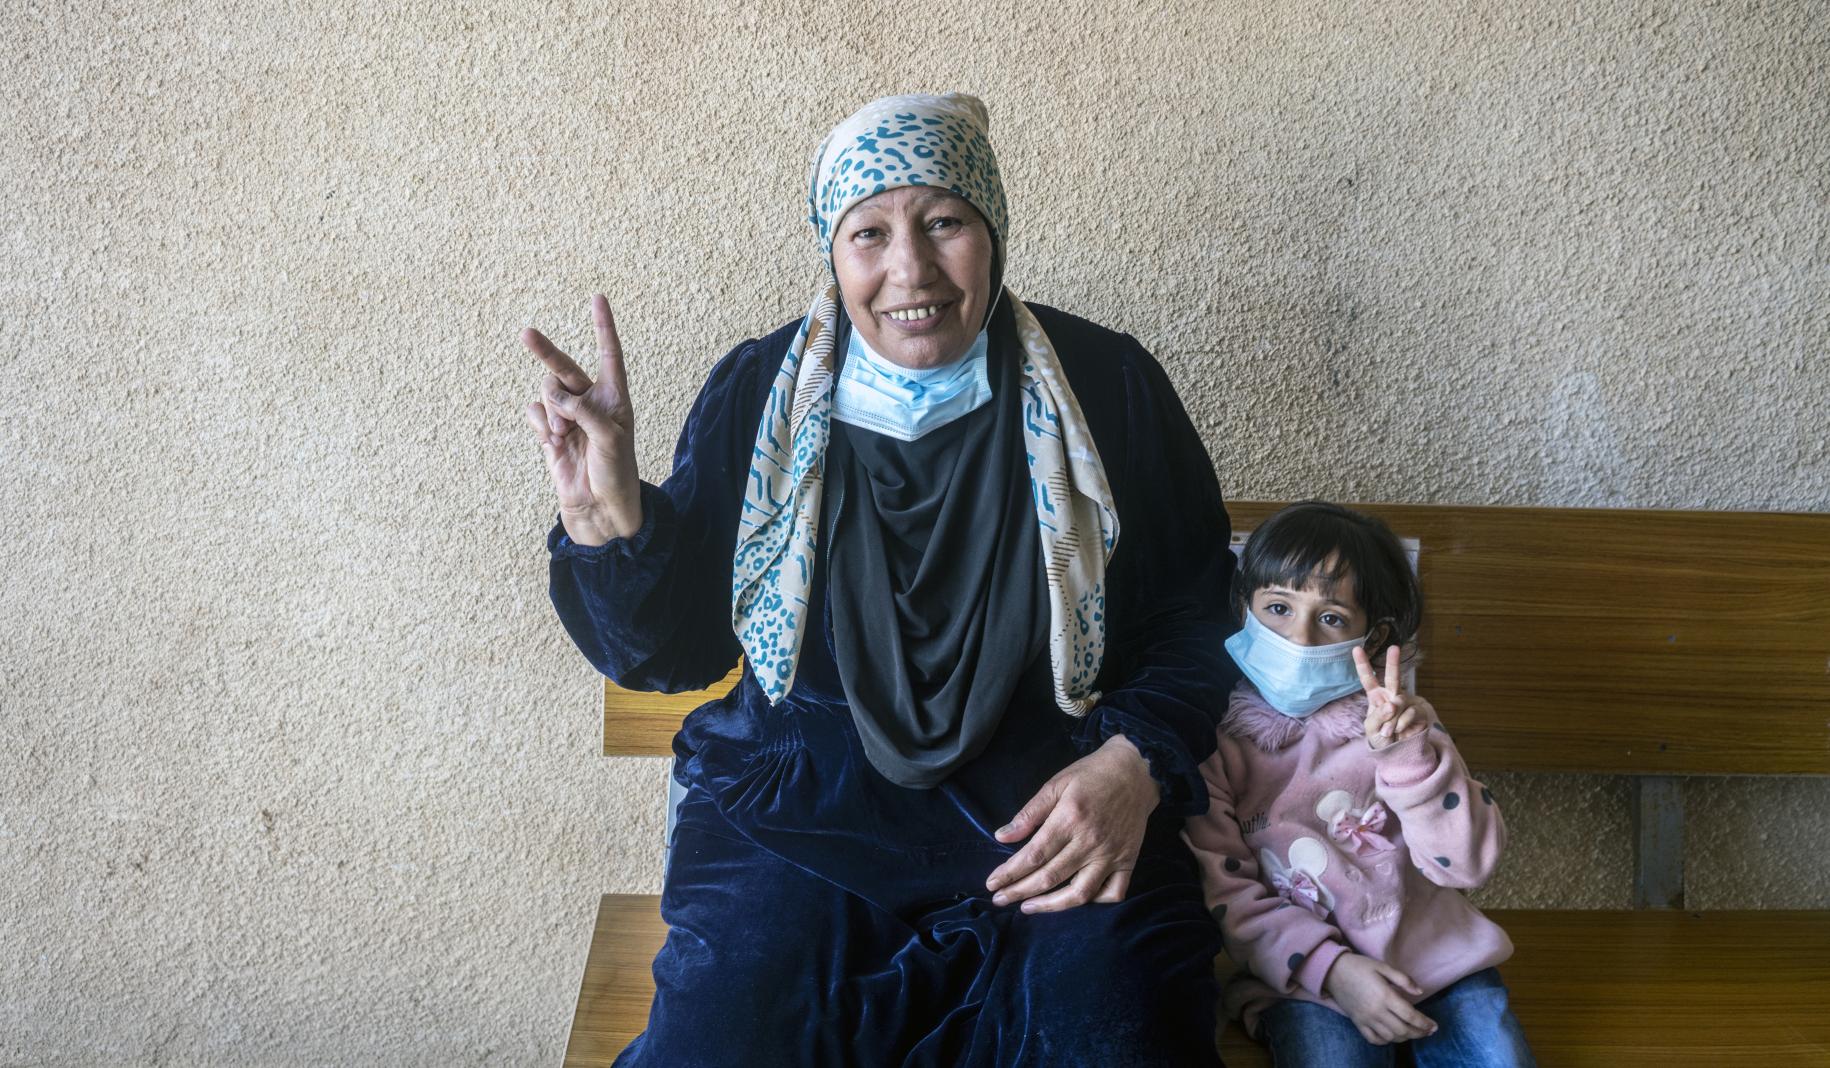 امرأة تبتسم للكاميرا مع حفيدتها الصغيرة. كلاهما يرفع علامة النصر بعد تلقي لقاح كوفيد-19.